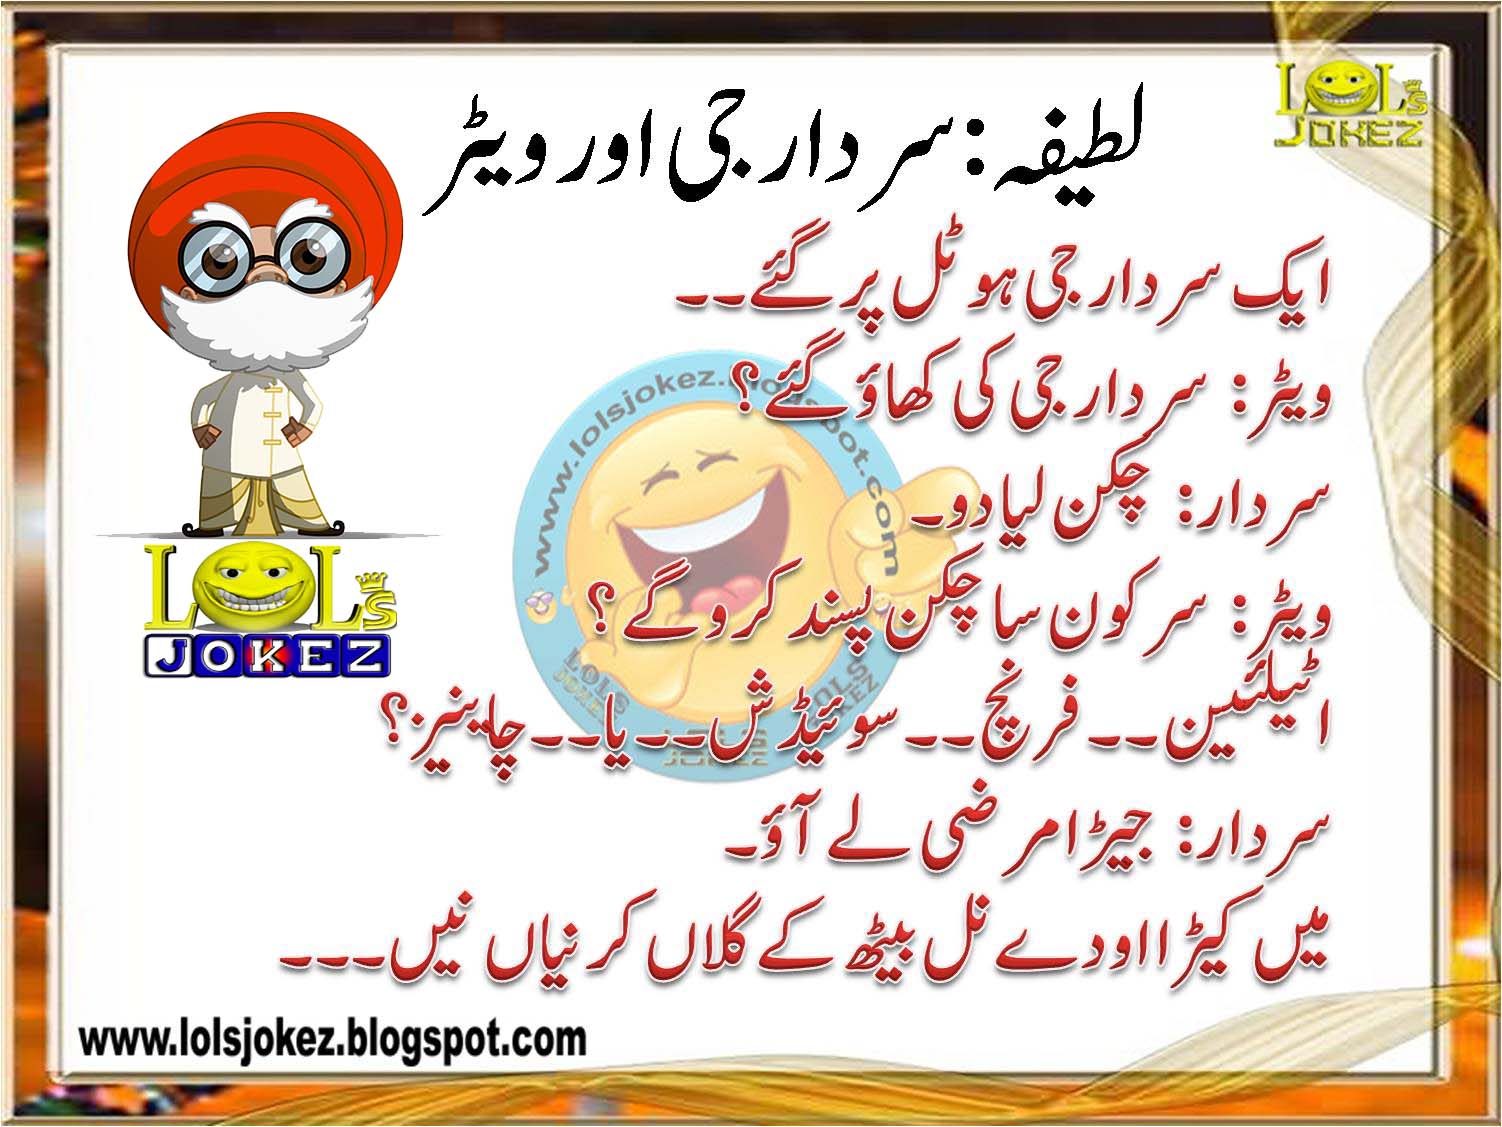 Sardar jokes urdu language